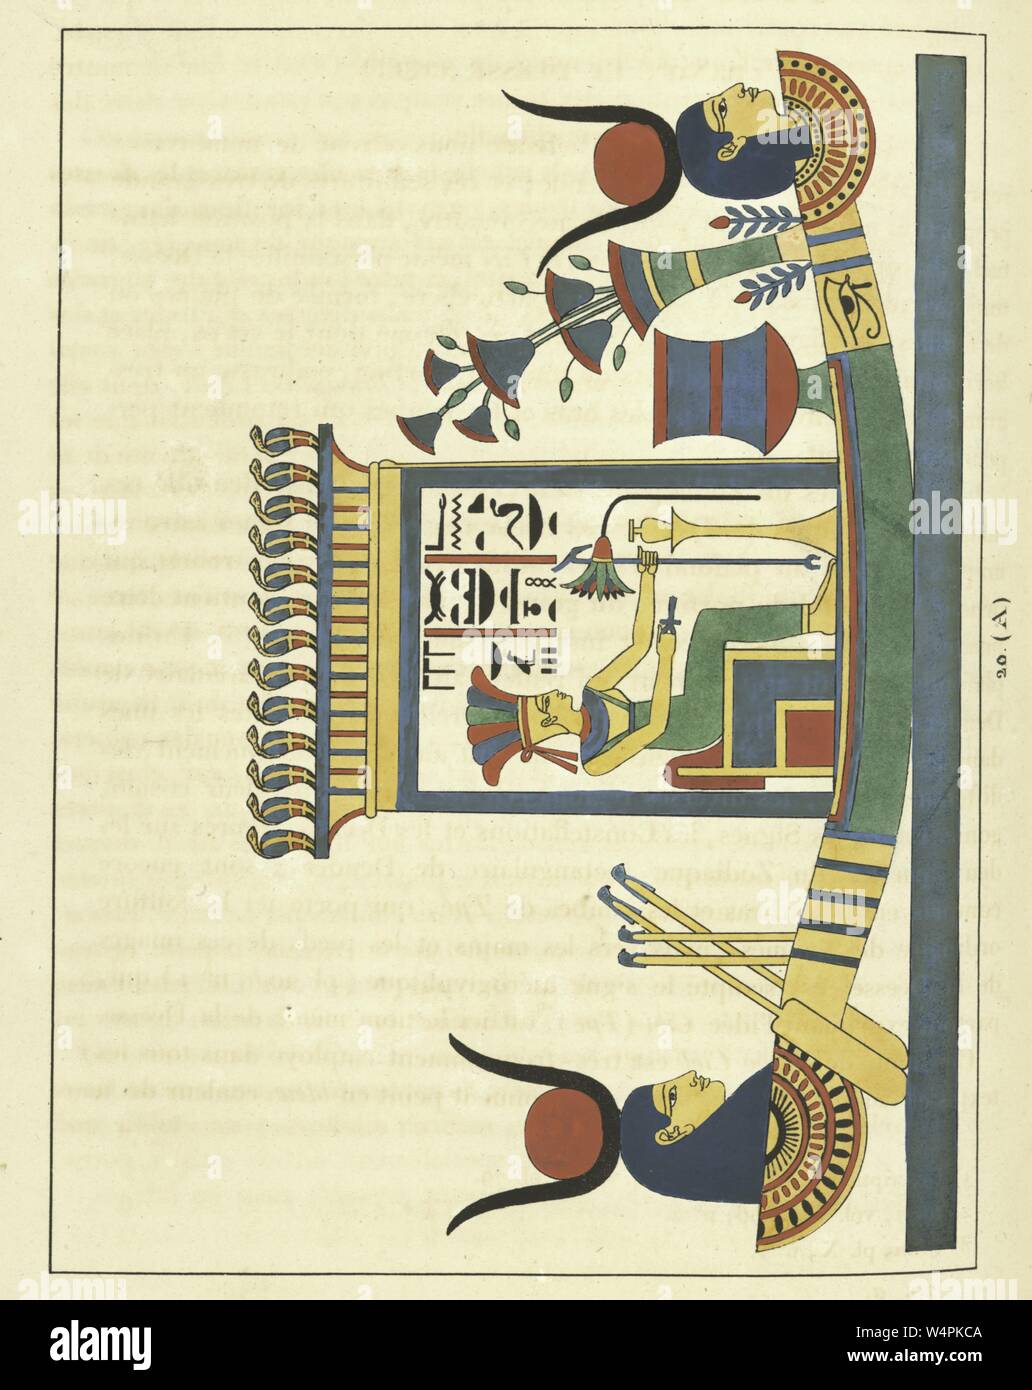 Antica egiziana emblema della dea Anuket, la figlia del dio del sole Ra, illustrazione del libro 'Pantheon Egyptien' da Leon Jean Joseph Dubois, 1824. Dalla Biblioteca Pubblica di New York. () Foto Stock